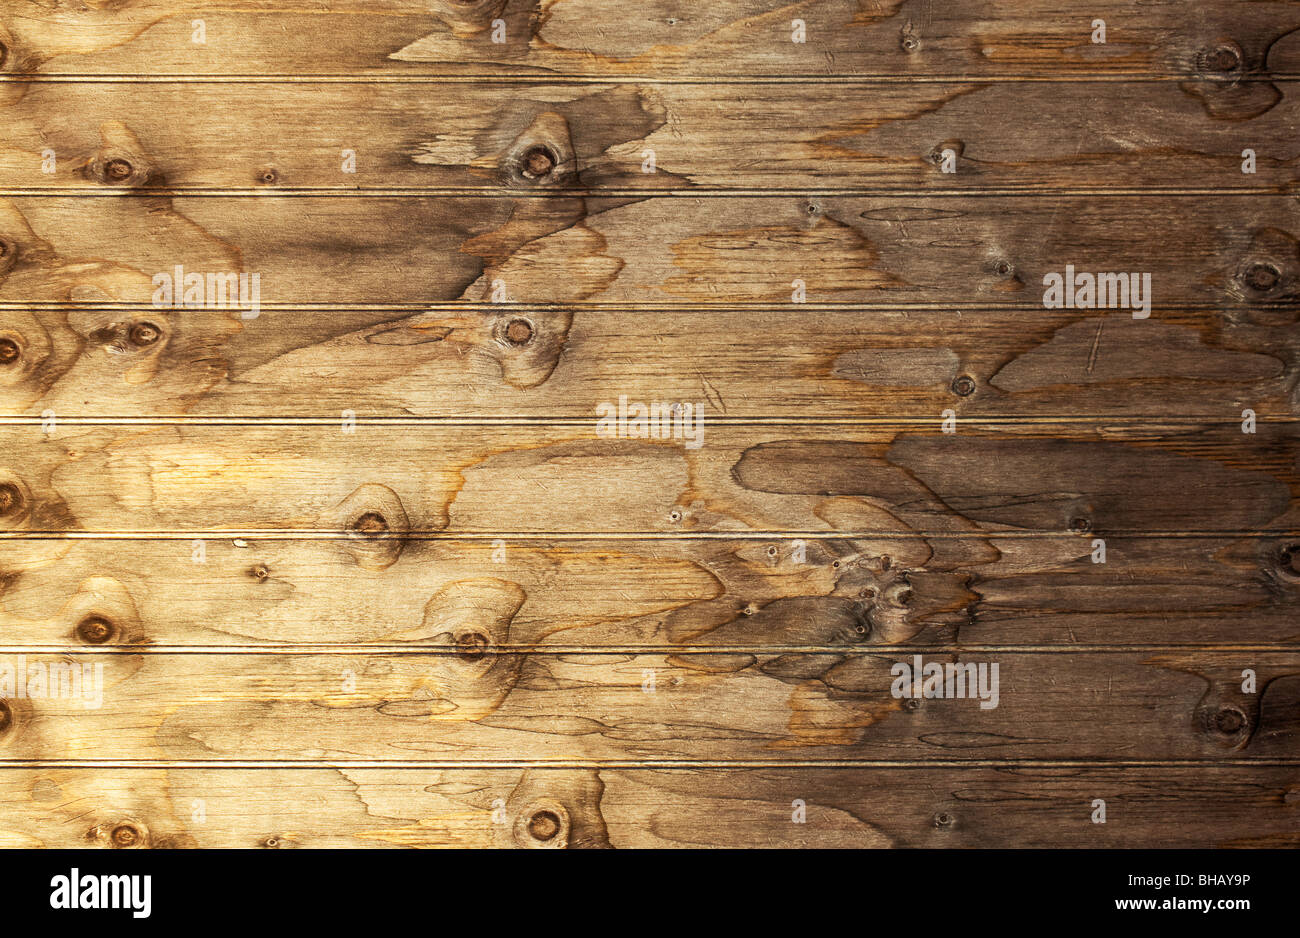 Immagine ad alta risoluzione del vecchio superficie in legno - perfetto come sfondo per le persone o i prodotti Foto Stock